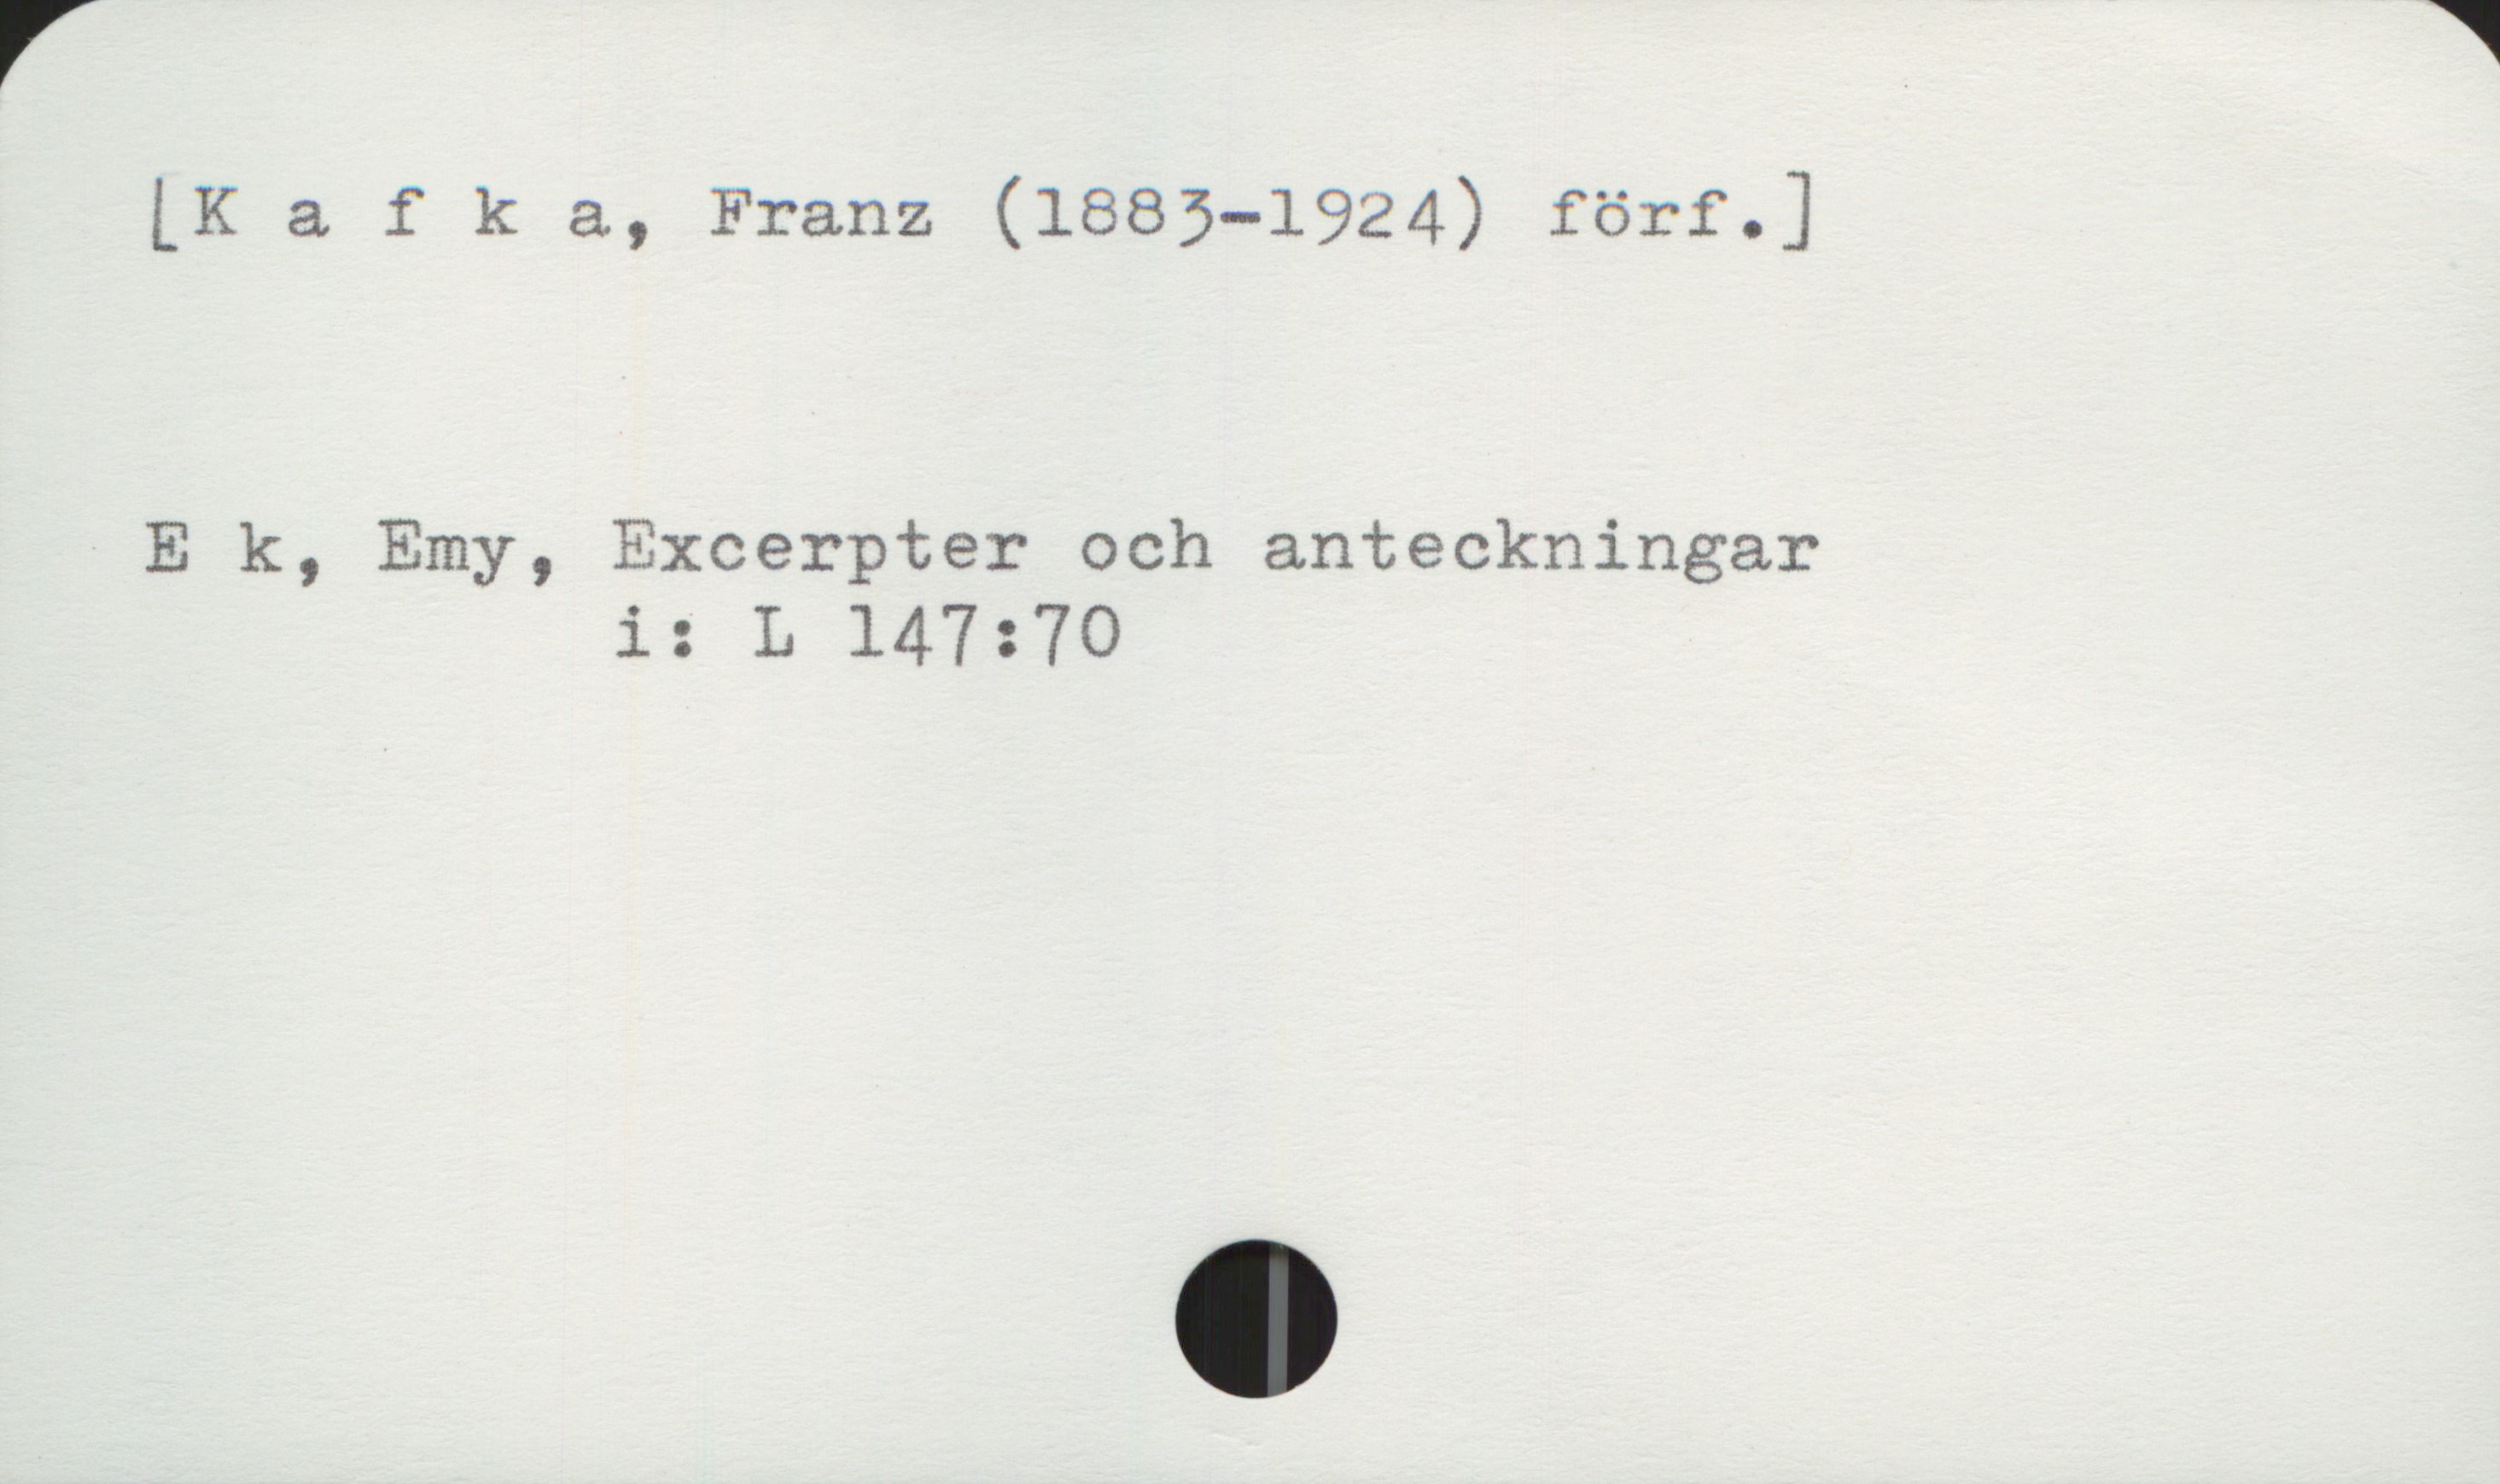 Kafka, Franz (1883-1924) [Kafka, Franz (1883-1924) förf.]


E k, Emy, Excerpter och anteckningar
                 i:   L 147:70